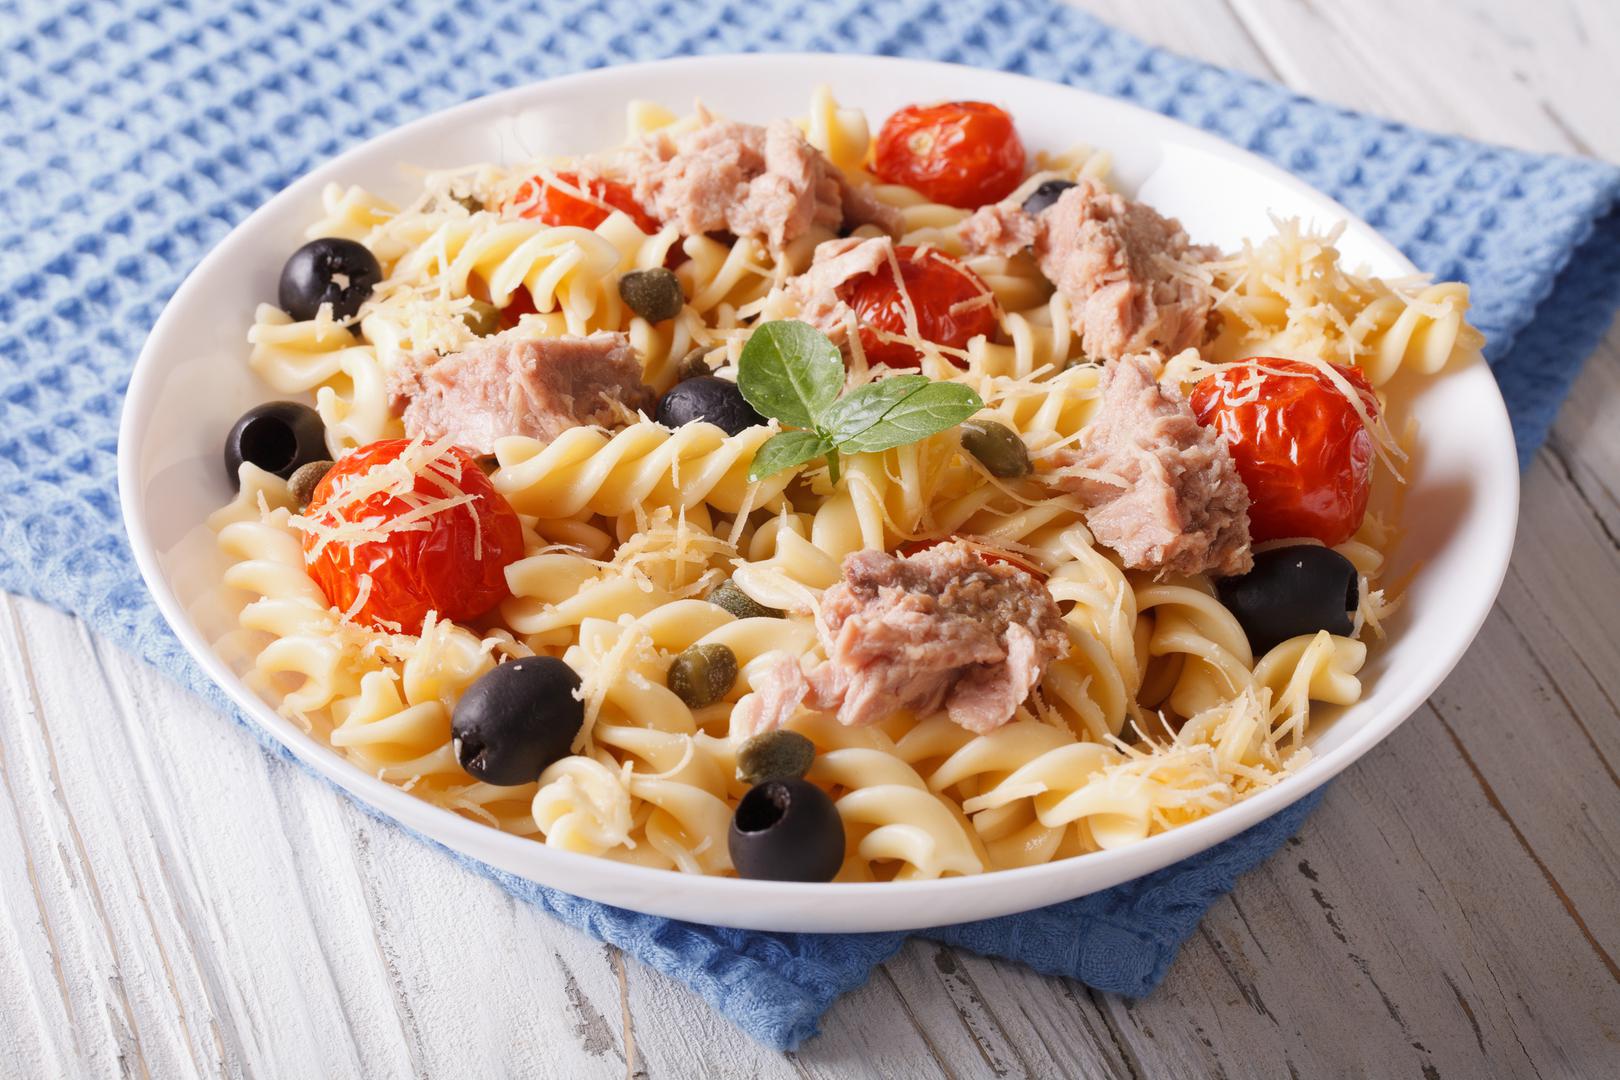 Šesti mit: Ostaci tjestenine mogu se smrznuti - Pogrešno. Poznati kuhari savjetuju da tjesteninu pojedete dok je svježa. Ipak, ako ste tjesteninu smrznuli nemojte čekati da se odmrzne, već je odmah stavite u vruću vodu